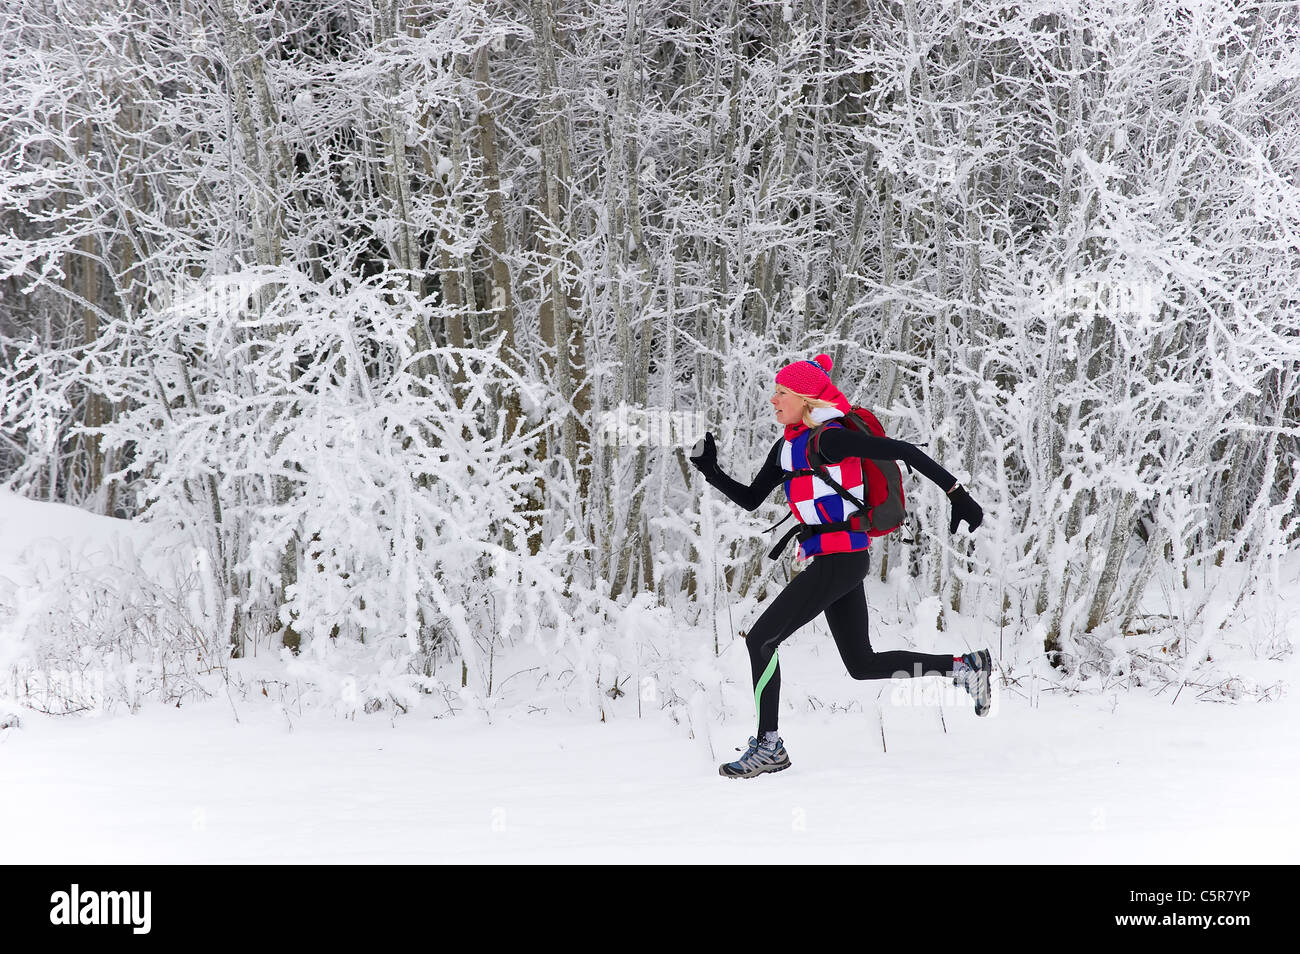 Un jogger tournant rapidement dans une forêt d'hiver. Banque D'Images